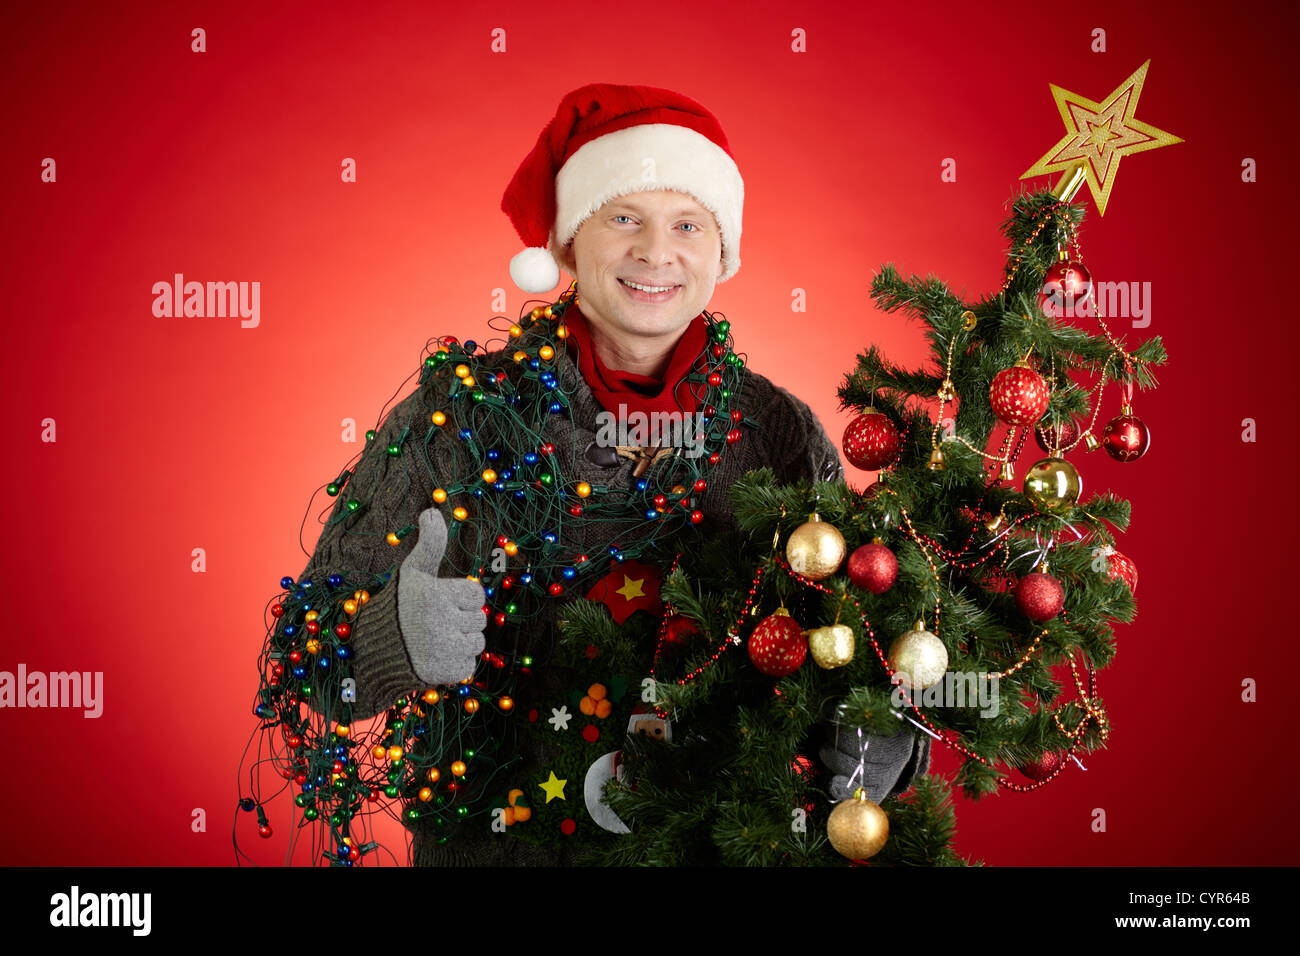 Ritratto di uomo felice in Santa cappuccio decorate albero di Natale che mostra il pollice in alto Foto Stock